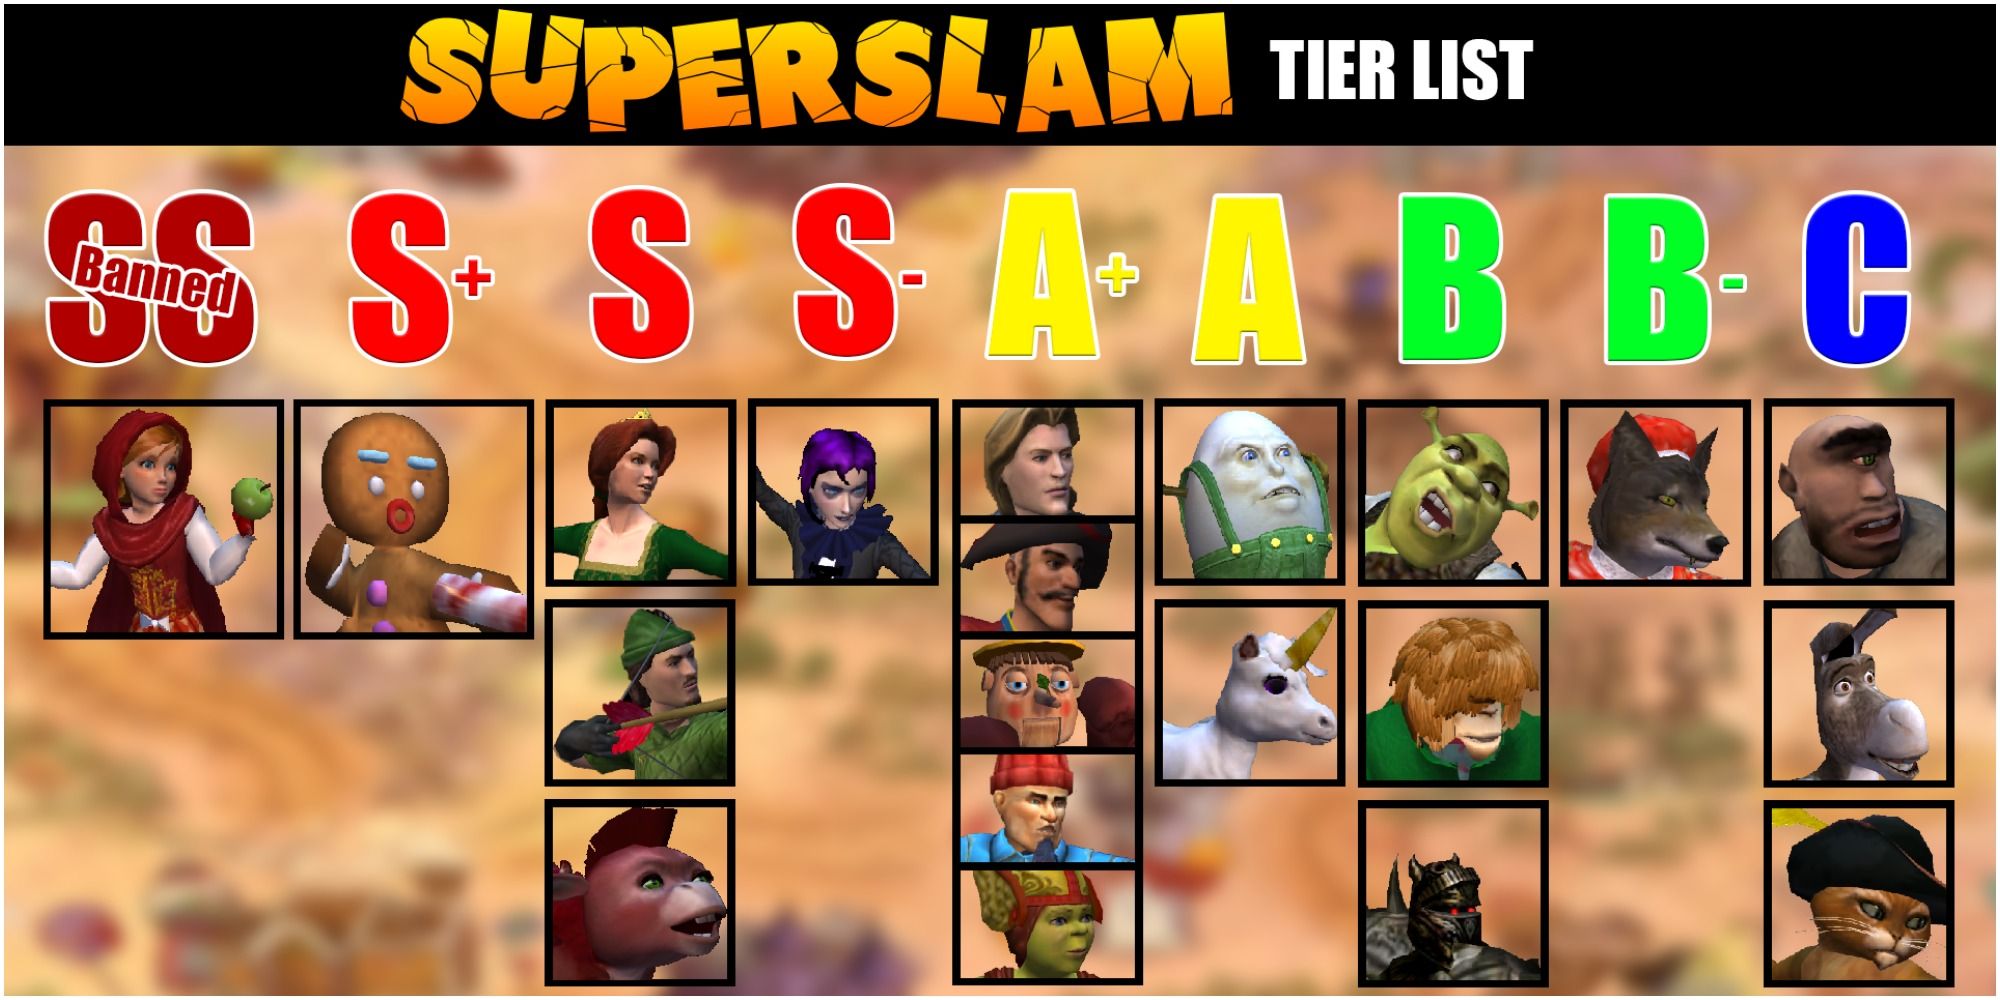 Shrek Super Slam Tier List